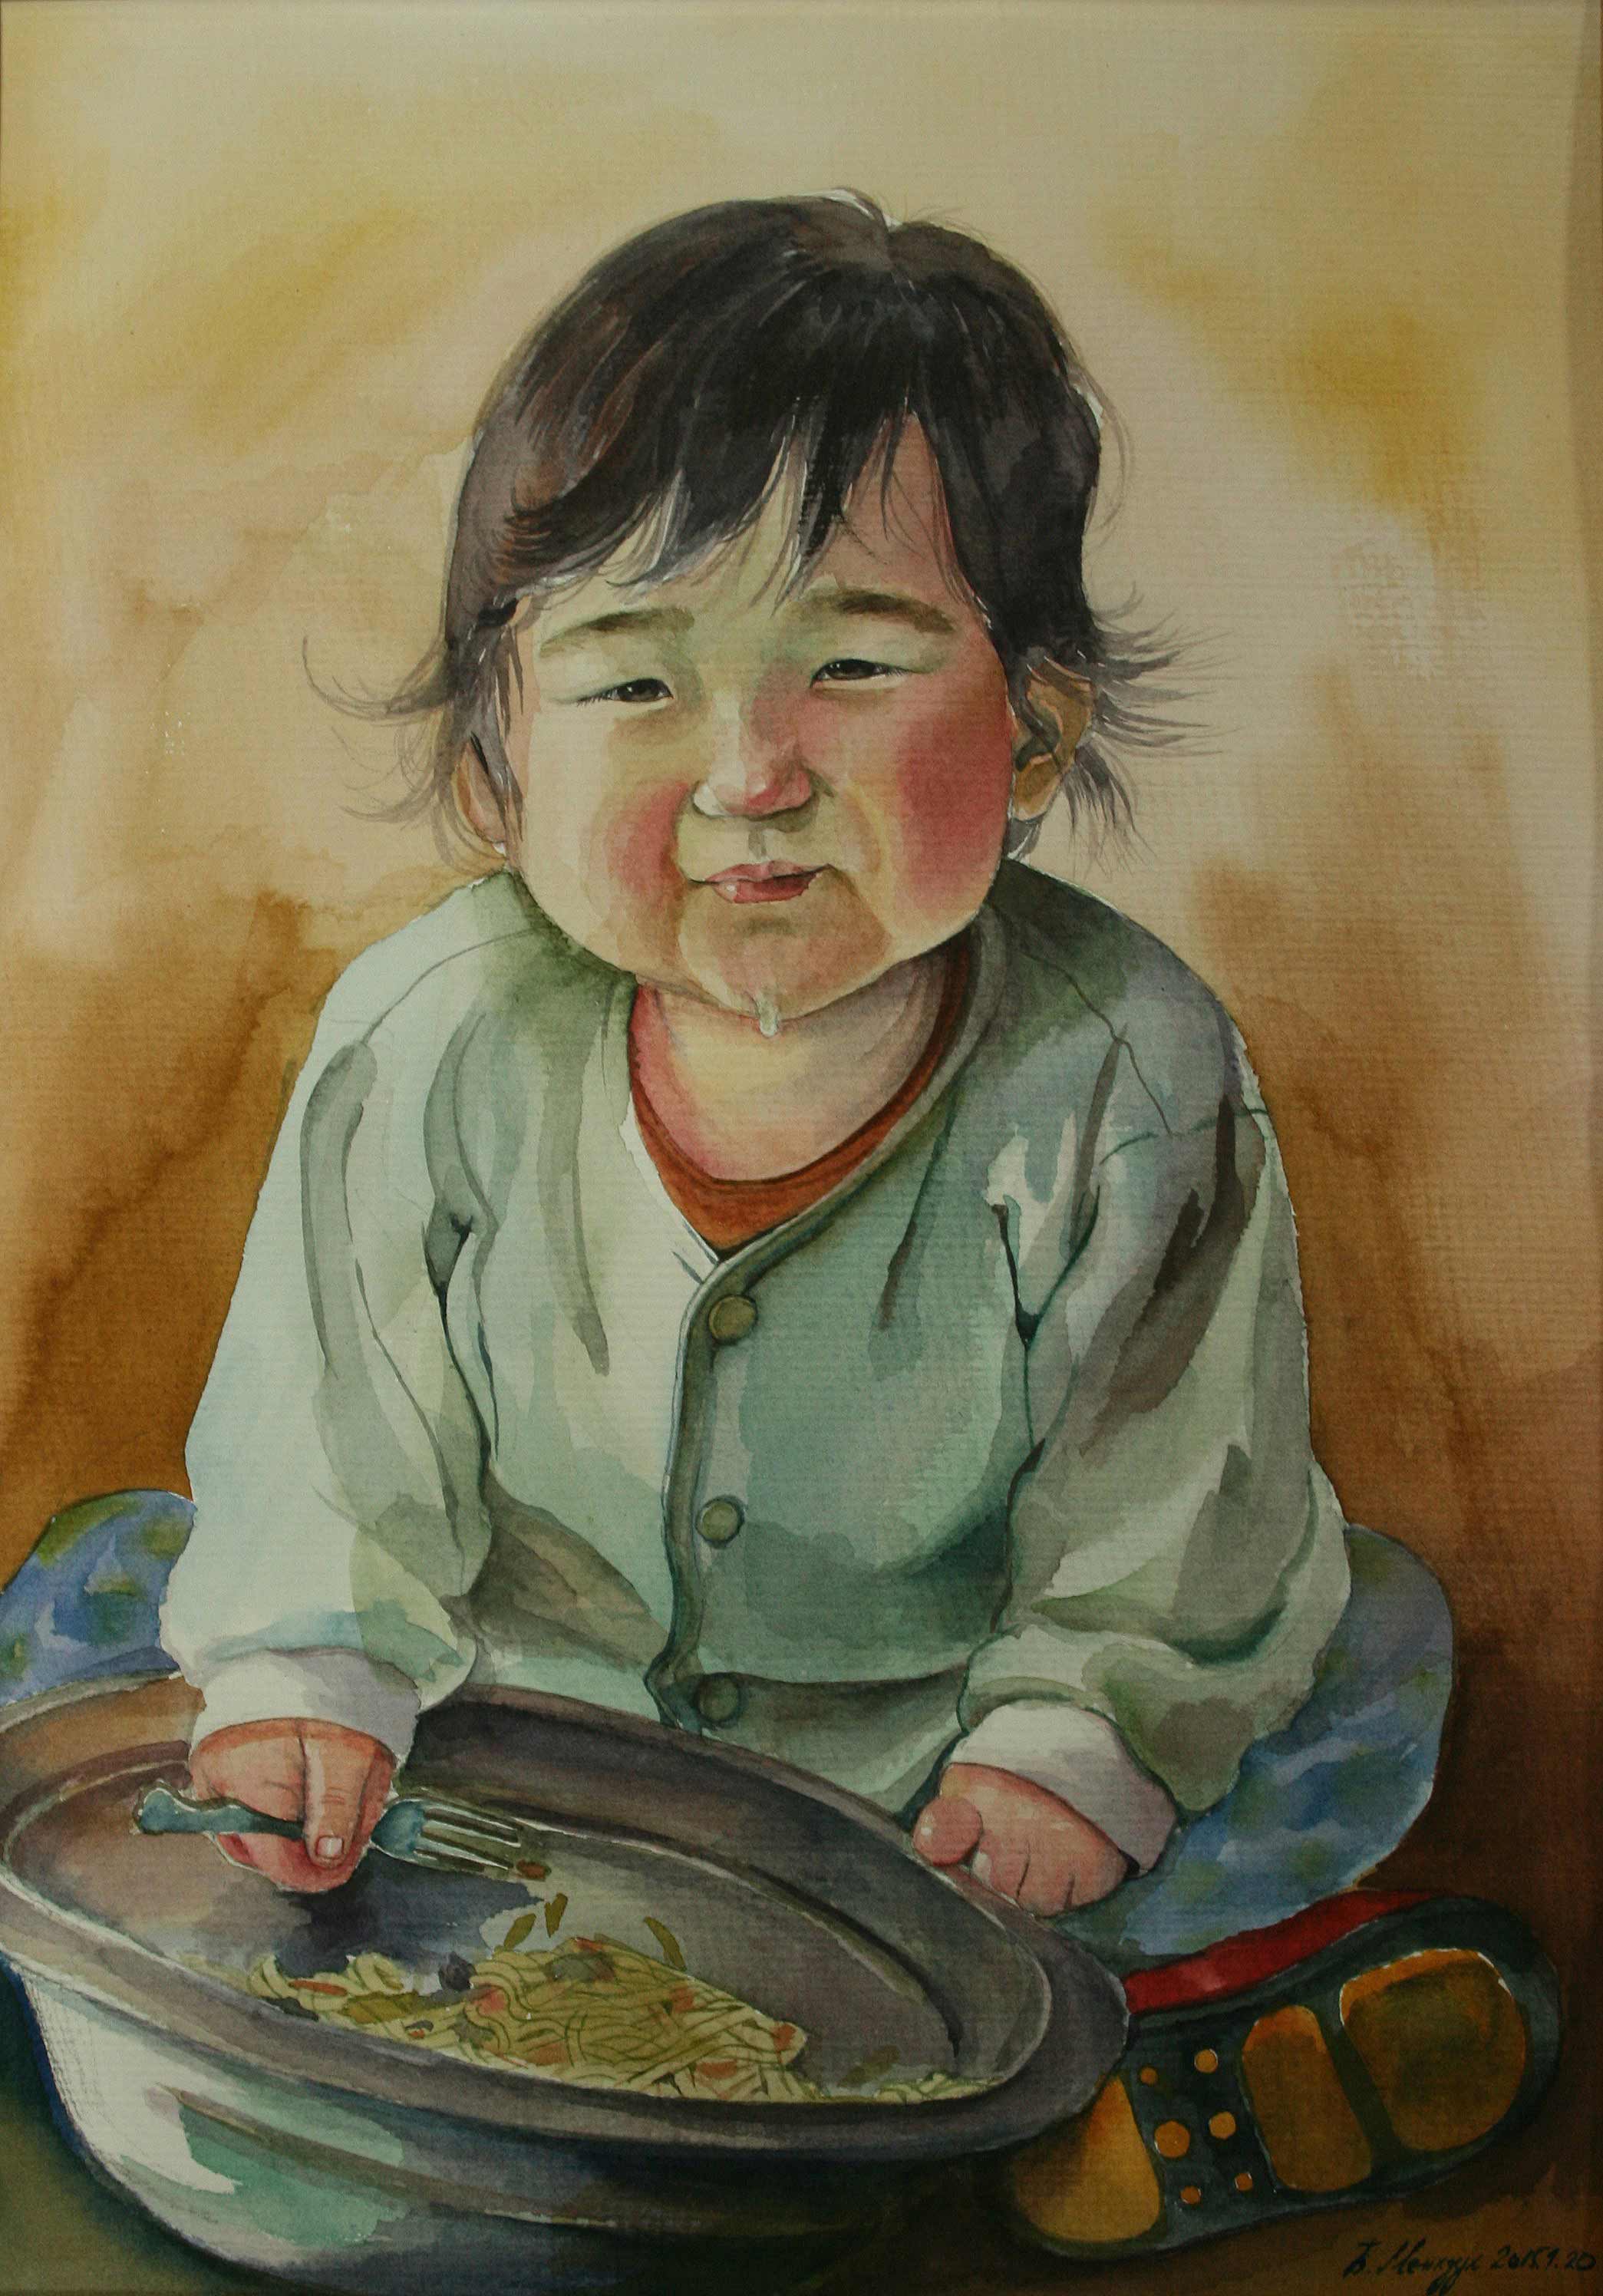 La comida del pequeño niño en Mongolia